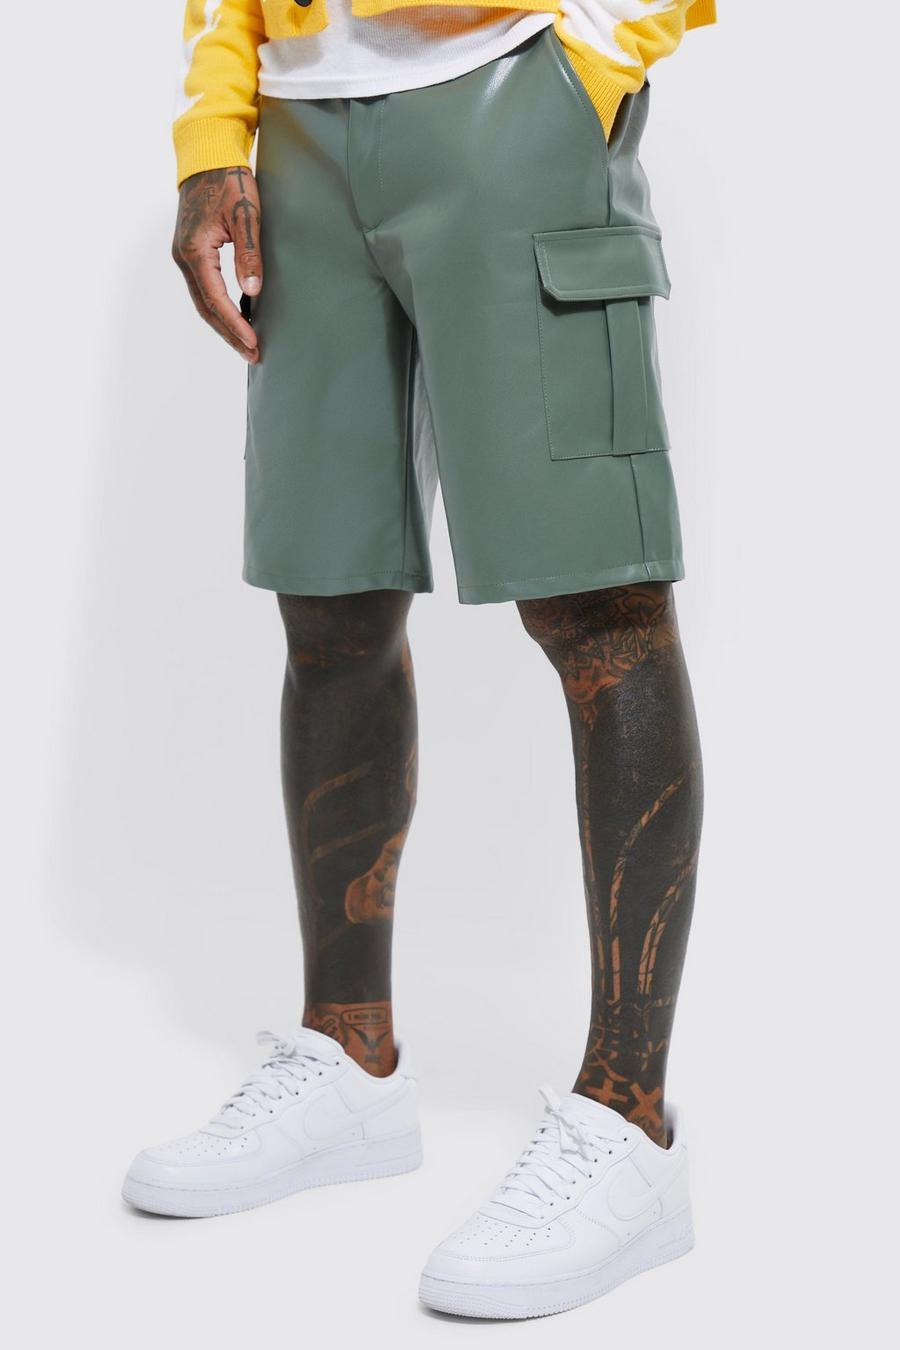 Lockere Cargo PU-Shorts, Khaki